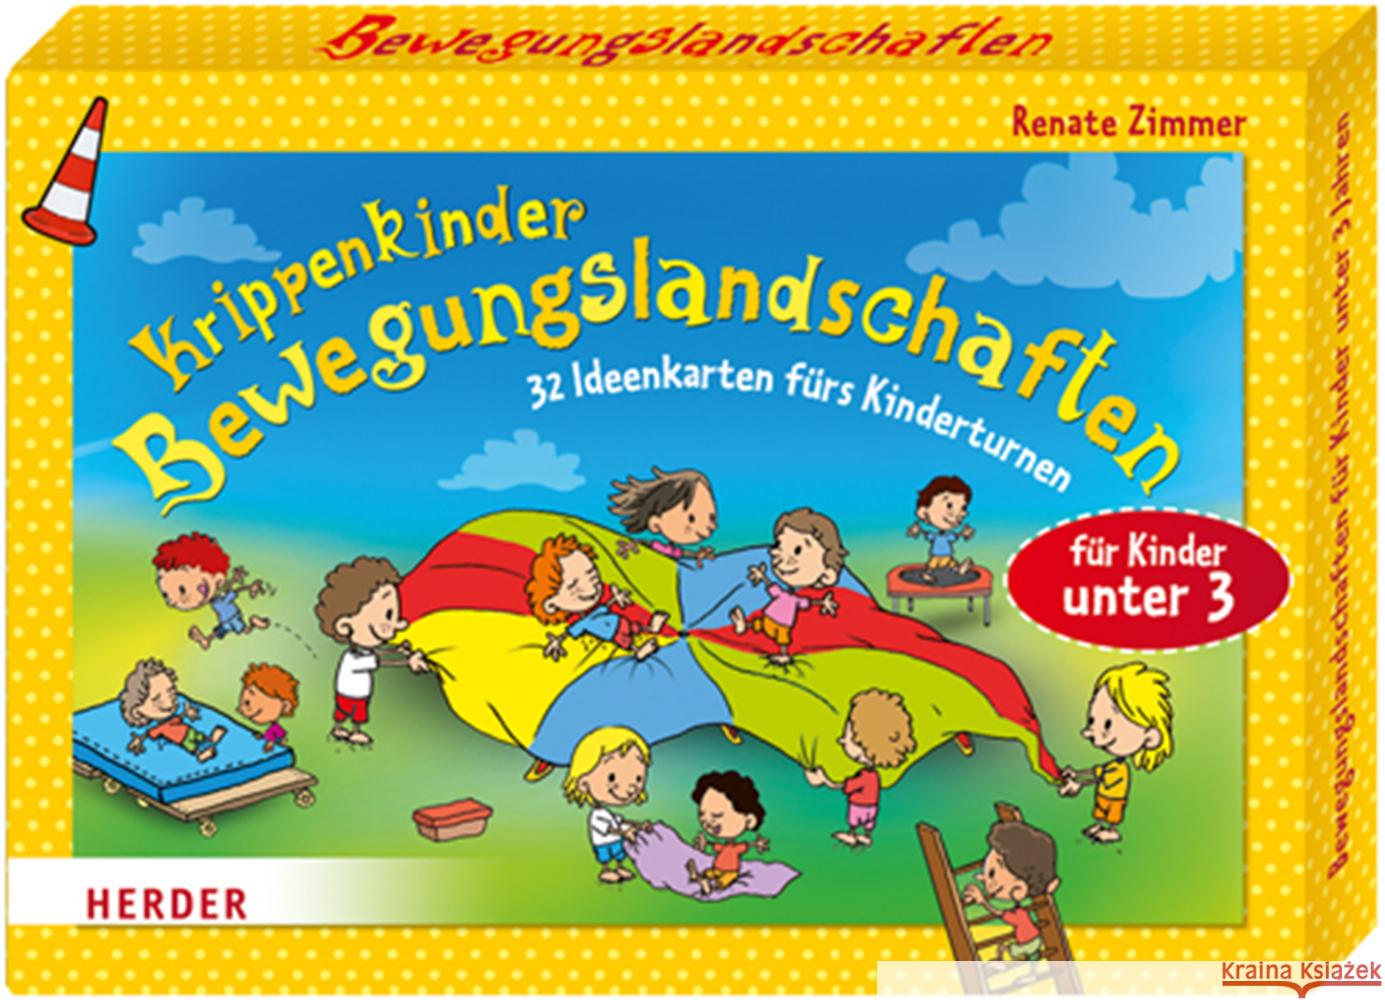 Krippenkinder - Bewegungslandschaften : 32 Ideenkarten fürs Kinderturnen. Für Kinder unter 3 Zimmer, Renate 9783451327452 Herder, Freiburg - książka